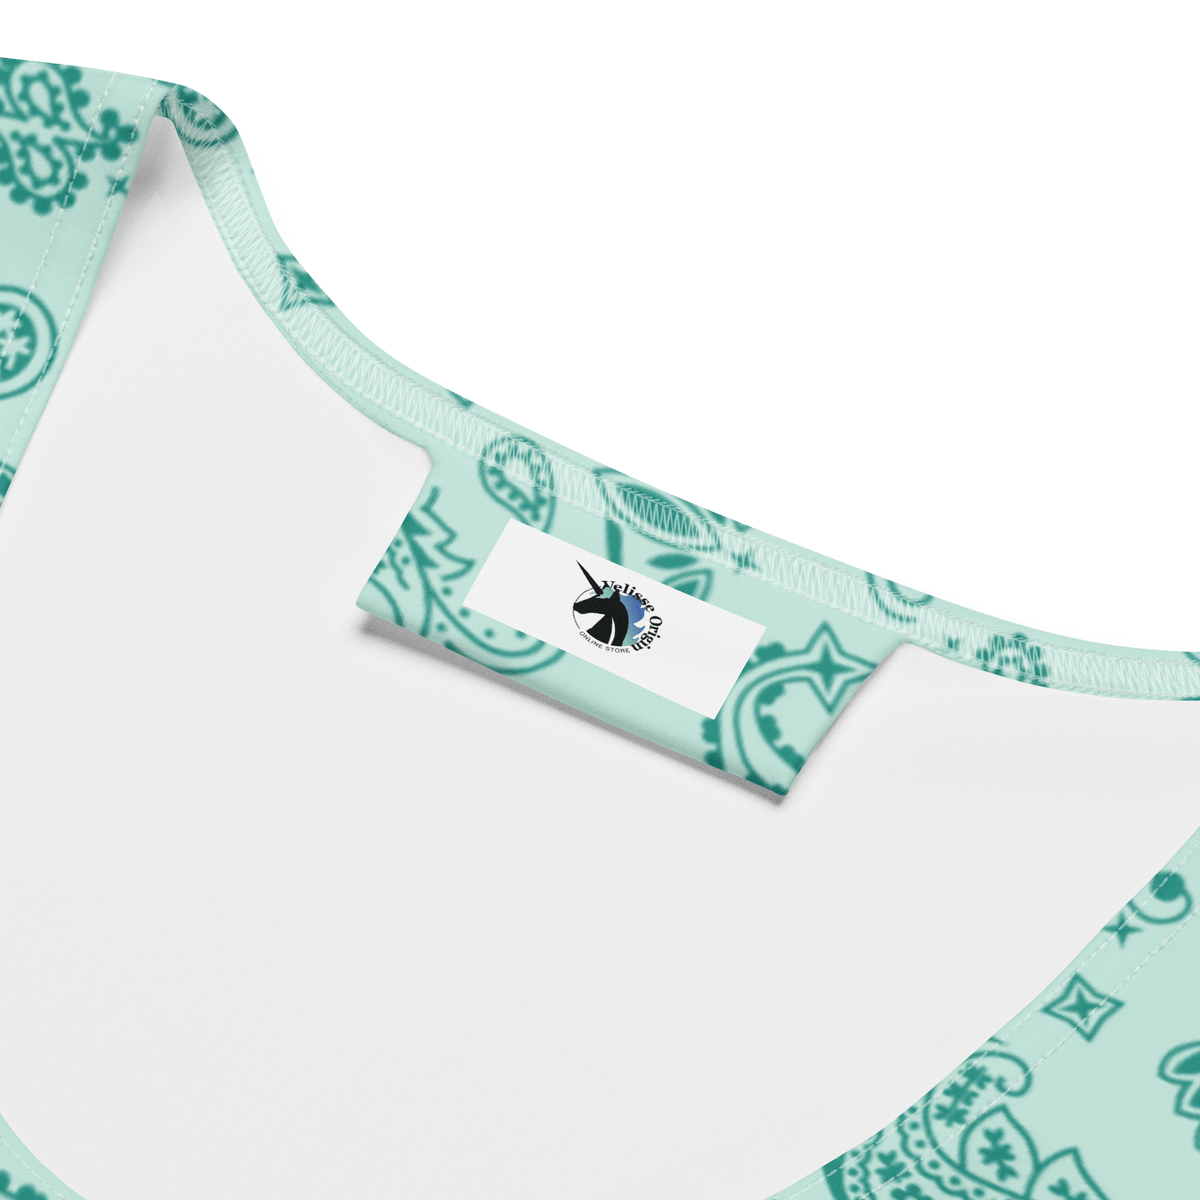 Handkerchief Print, Boho Chic, Crop Top Style, Unique Design, Trendy Fashion, Statement Piece, Versatile Crop, Fashion Forward, Eye-Catching Print, Effortless Elegance